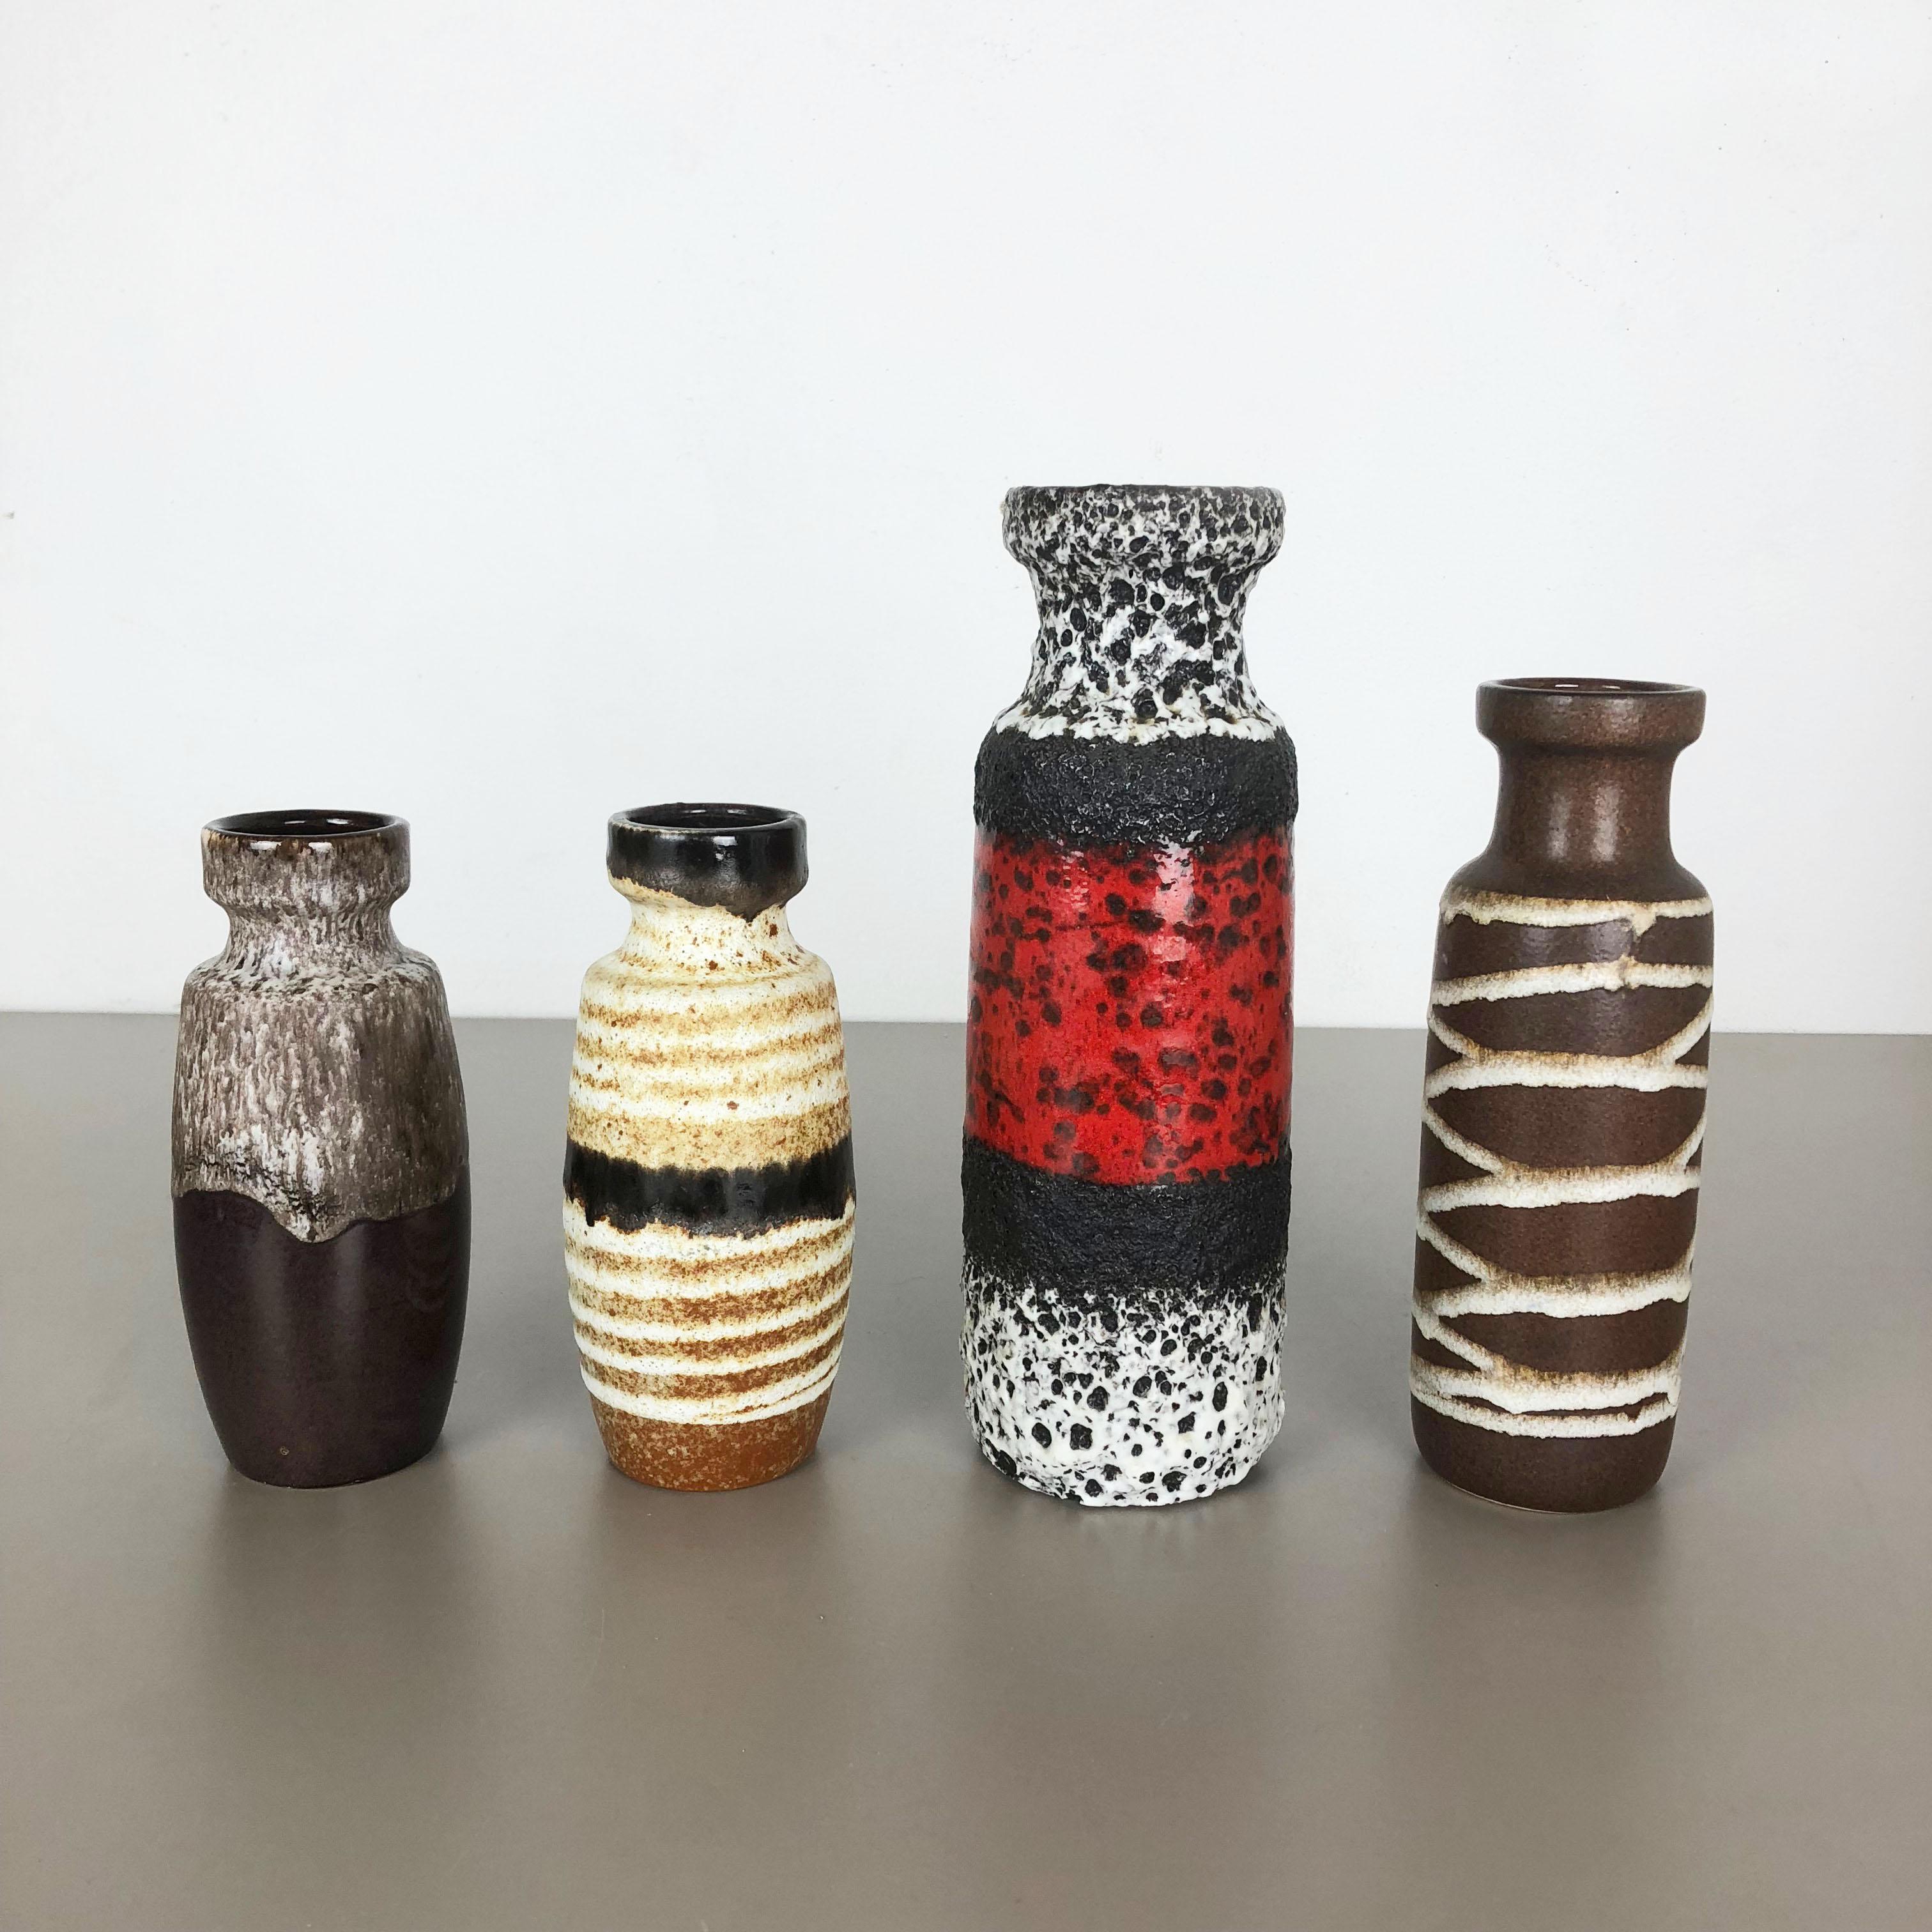 Article :

Ensemble de quatre vases d'art en lave grasse

Producteur :

Scheurich, Allemagne

Décennie :

1970s

modèle :
210-18
200-22
200-28

Ces vases vintage originaux ont été produits dans les années 1970 en Allemagne. Il est